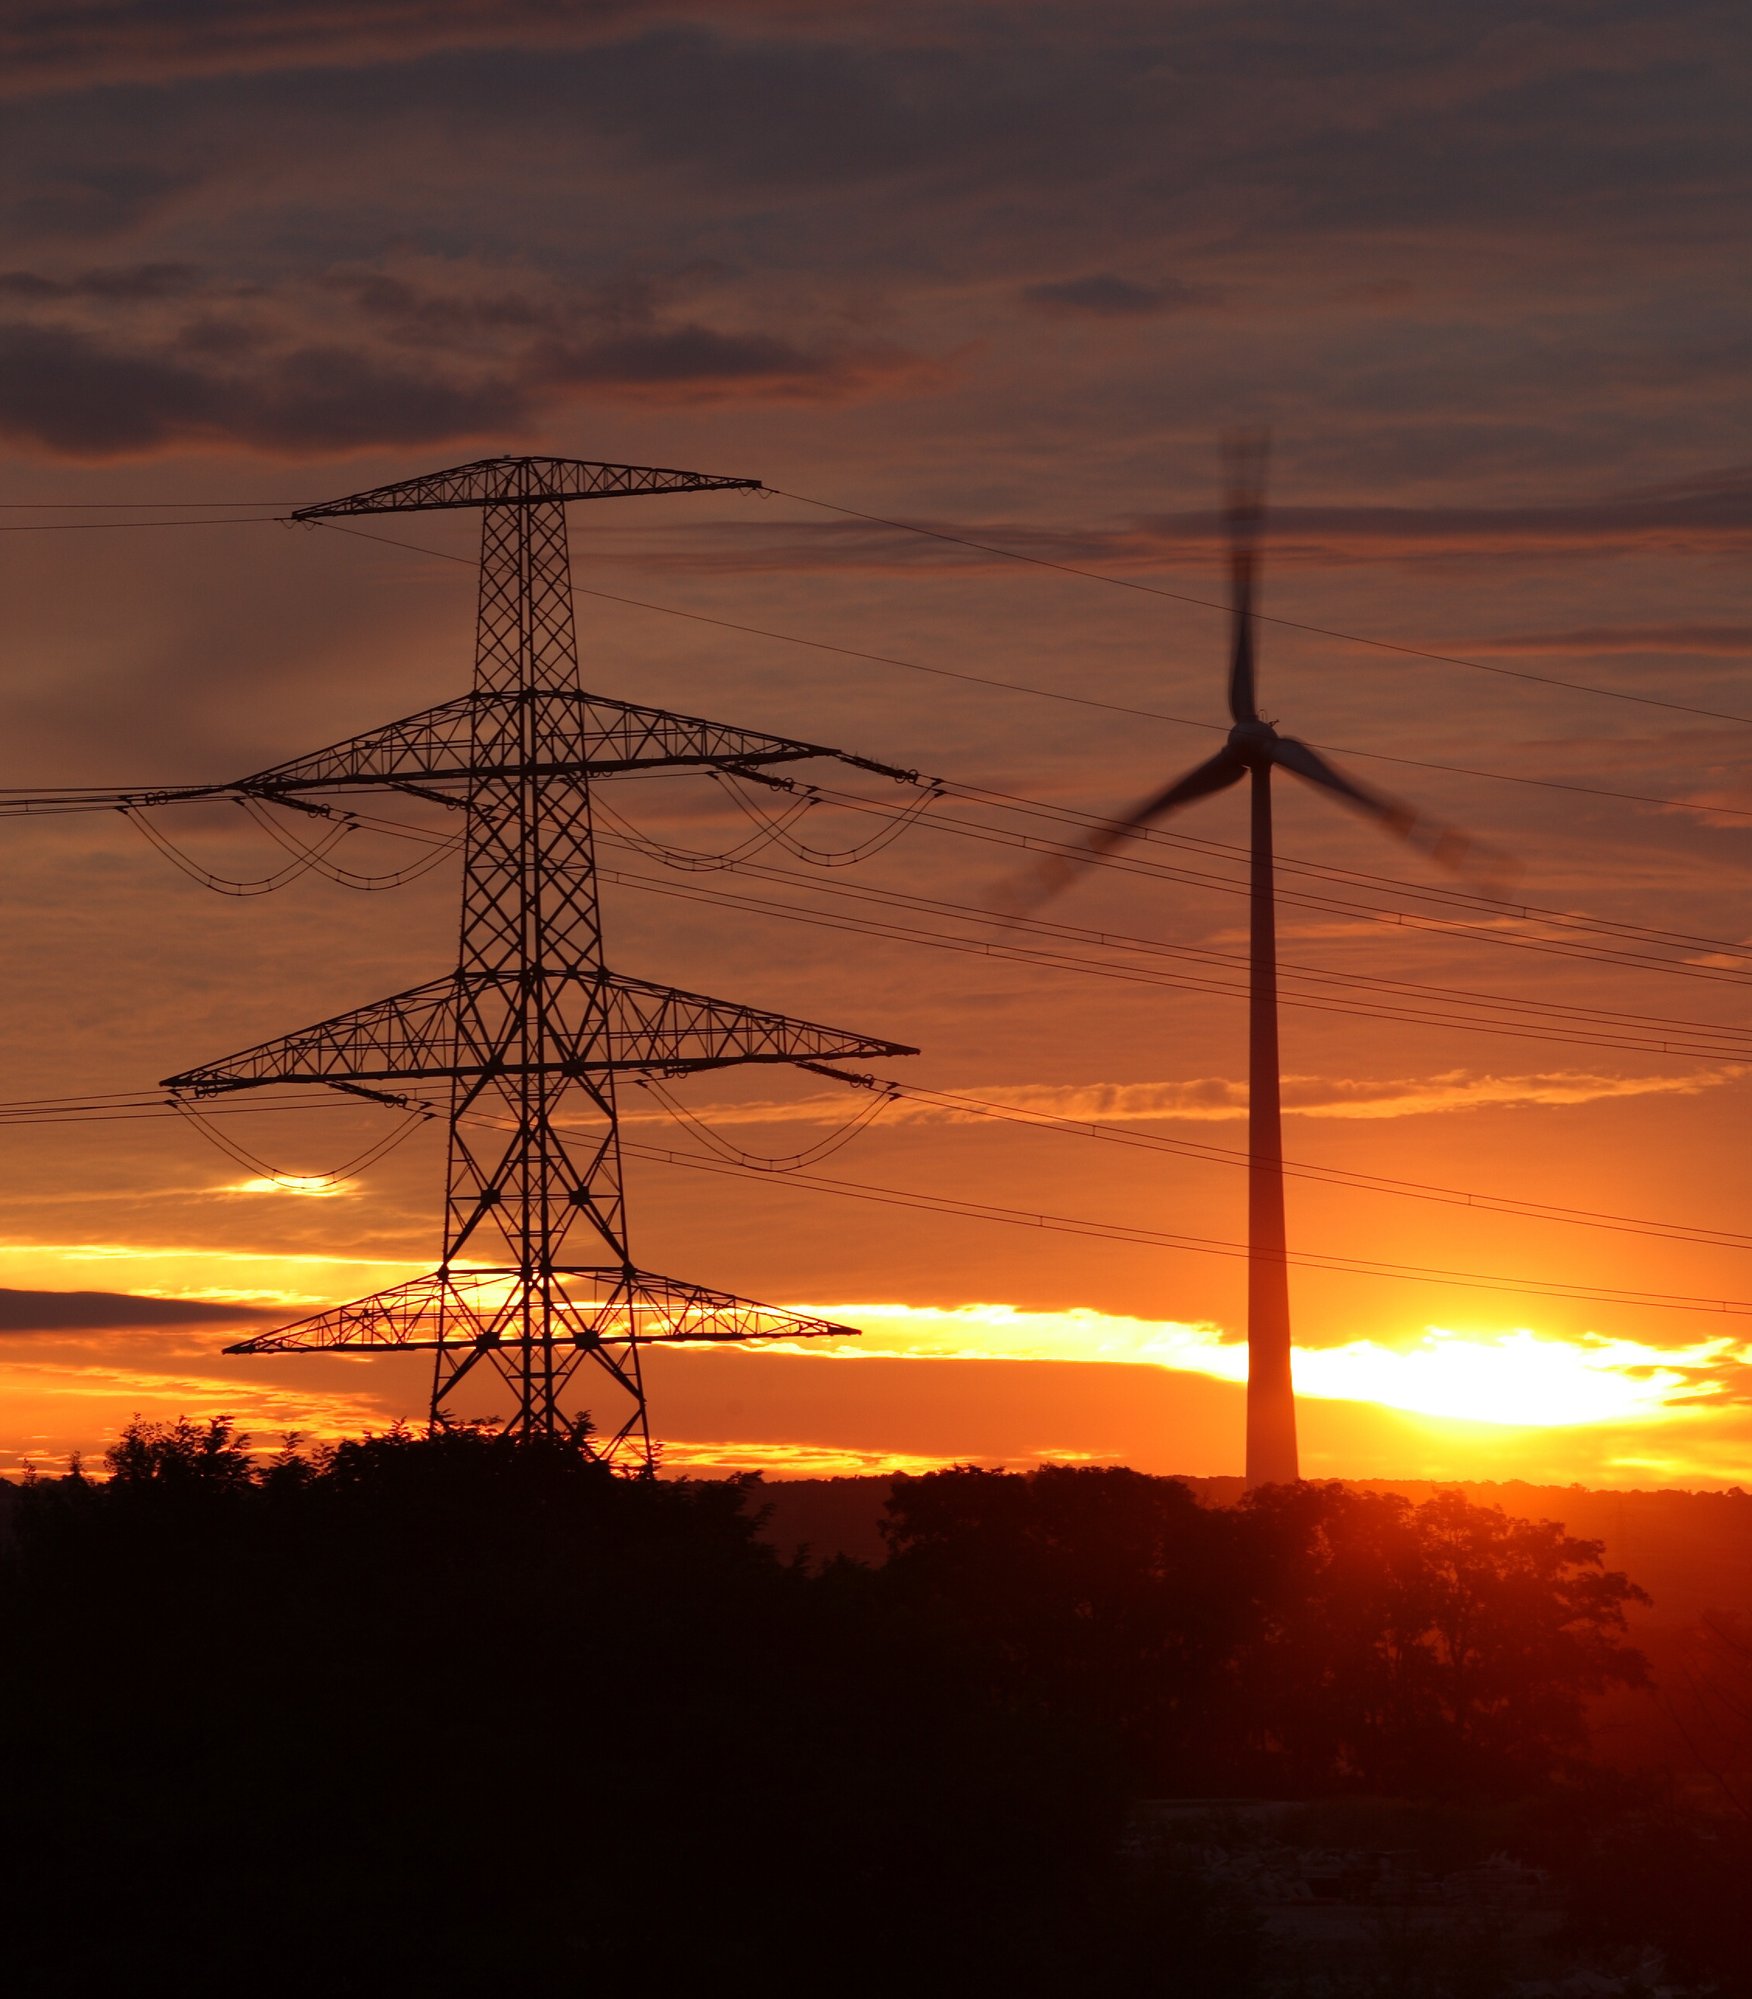 wind-energy-harvesting-wind-mills-at-sunrise-2021-09-01-00-23-28-utc